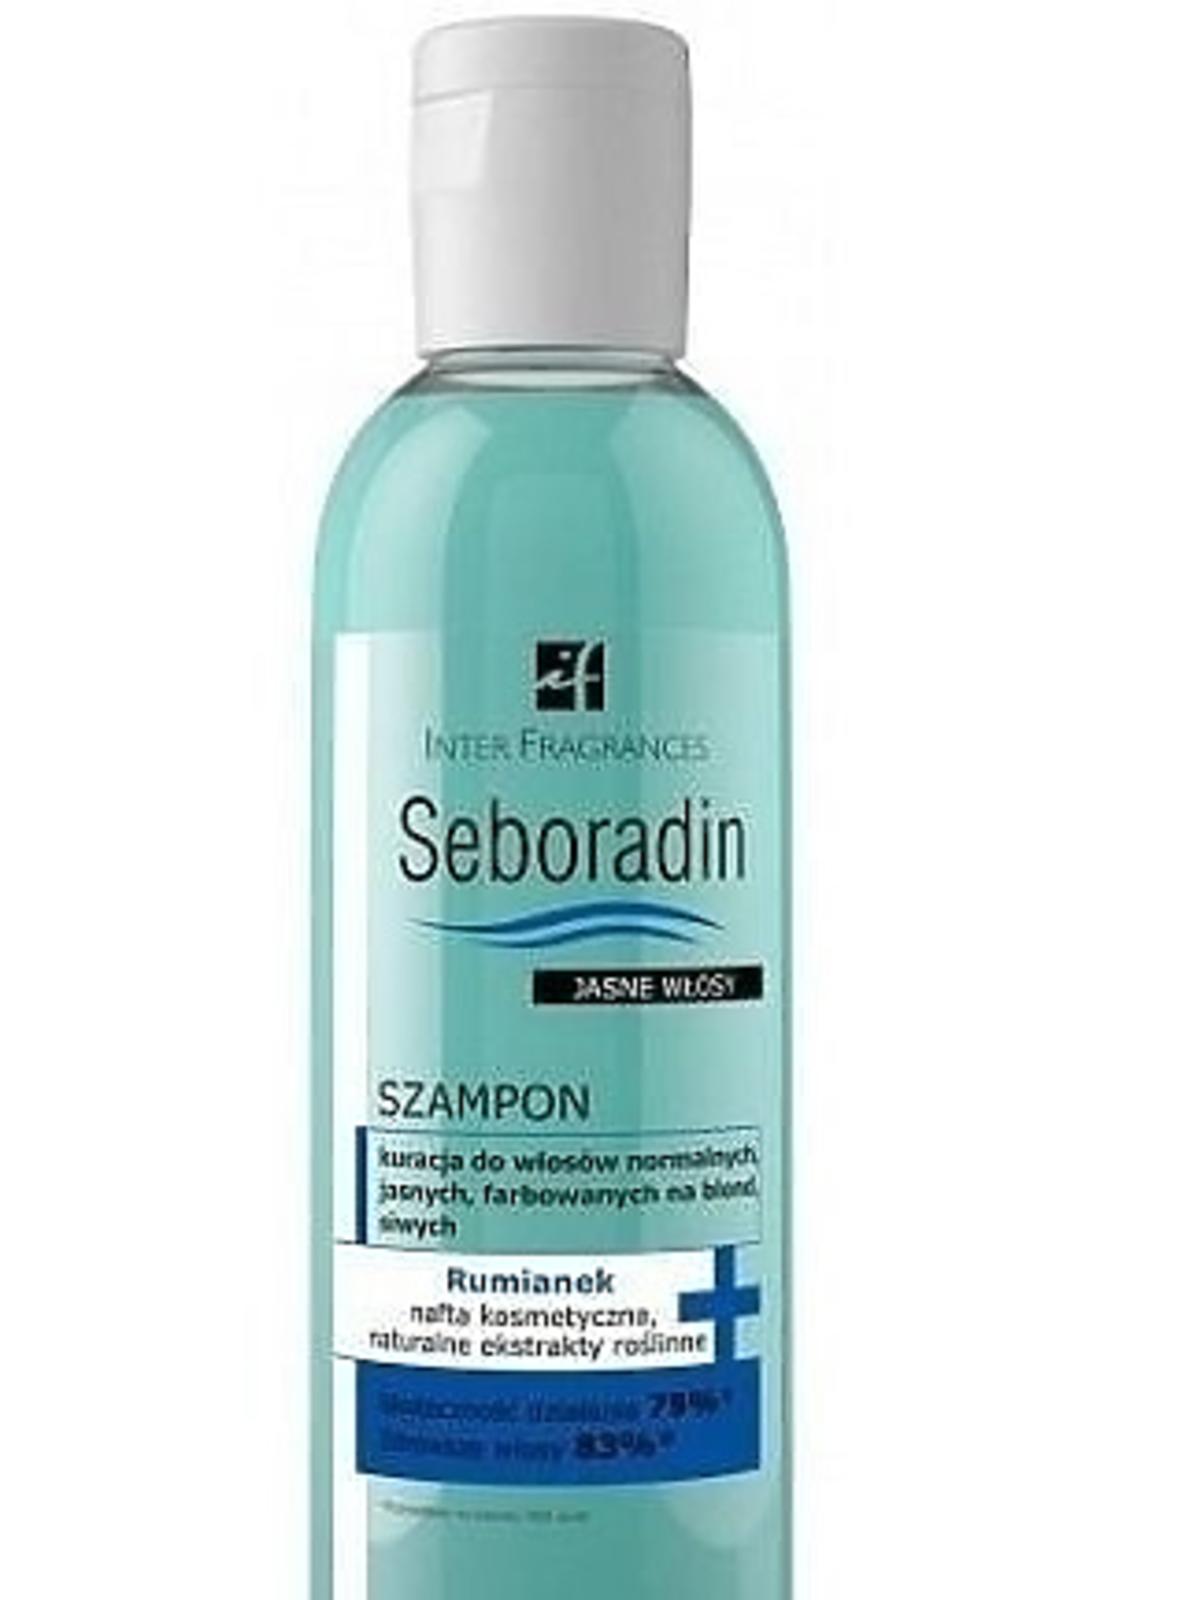 Seboradin, szampon do włosów normalnych, jasnych, farbowanych na blond, siwych, 29,99 zł